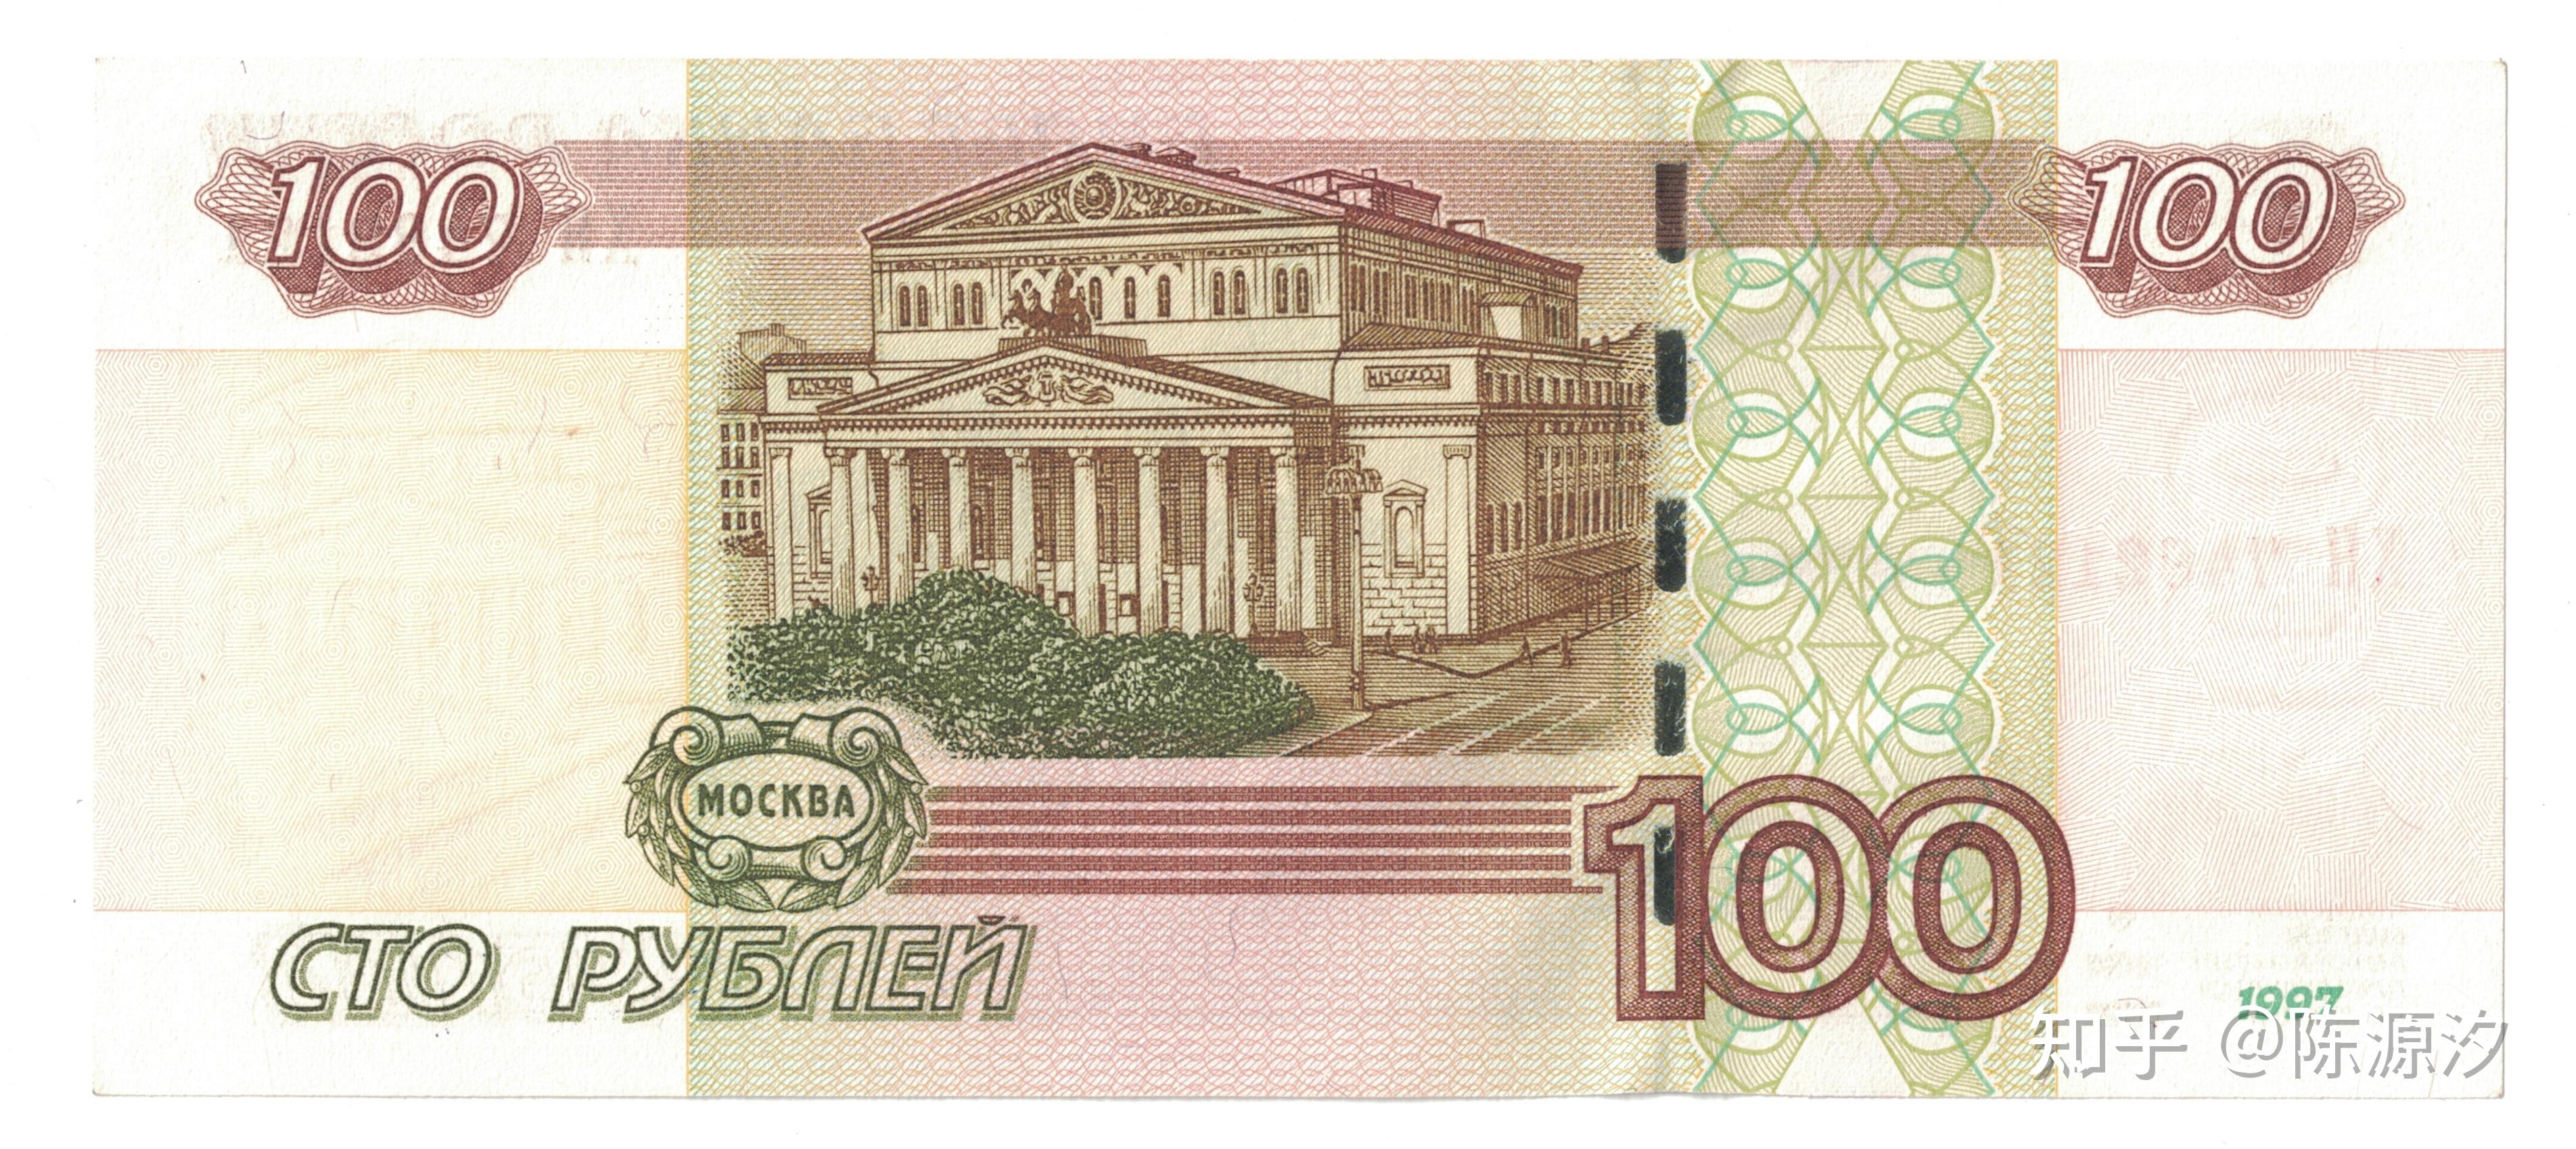 俄罗斯卢布纸币介绍1997年今